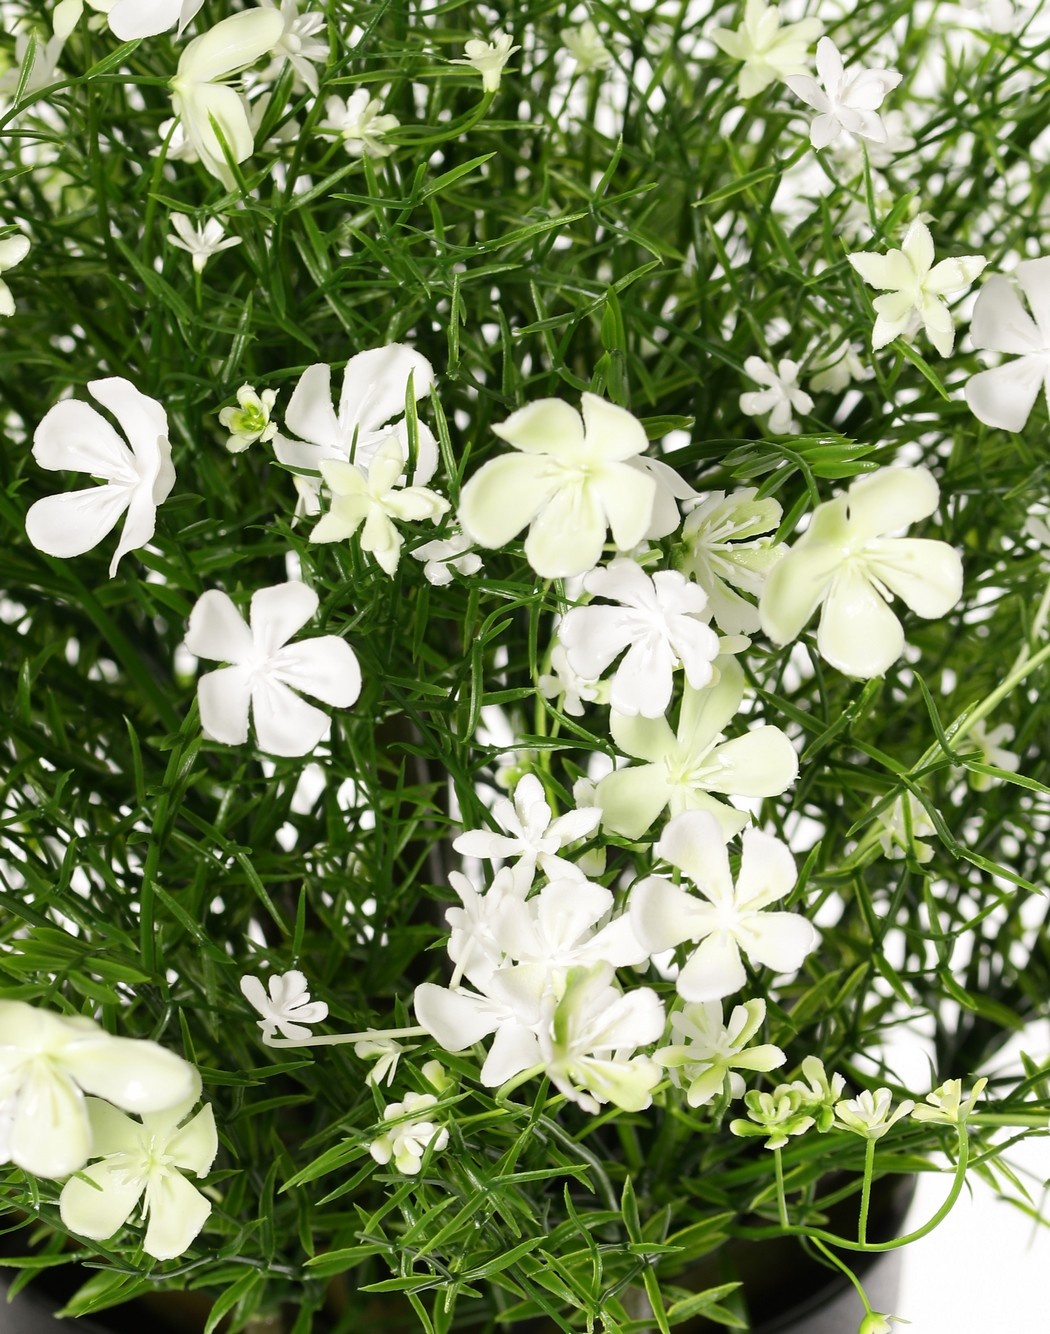 Impatiens con 269 flores mixtas, plástico, Ø 40 cm, A. 40 cm, en maceta